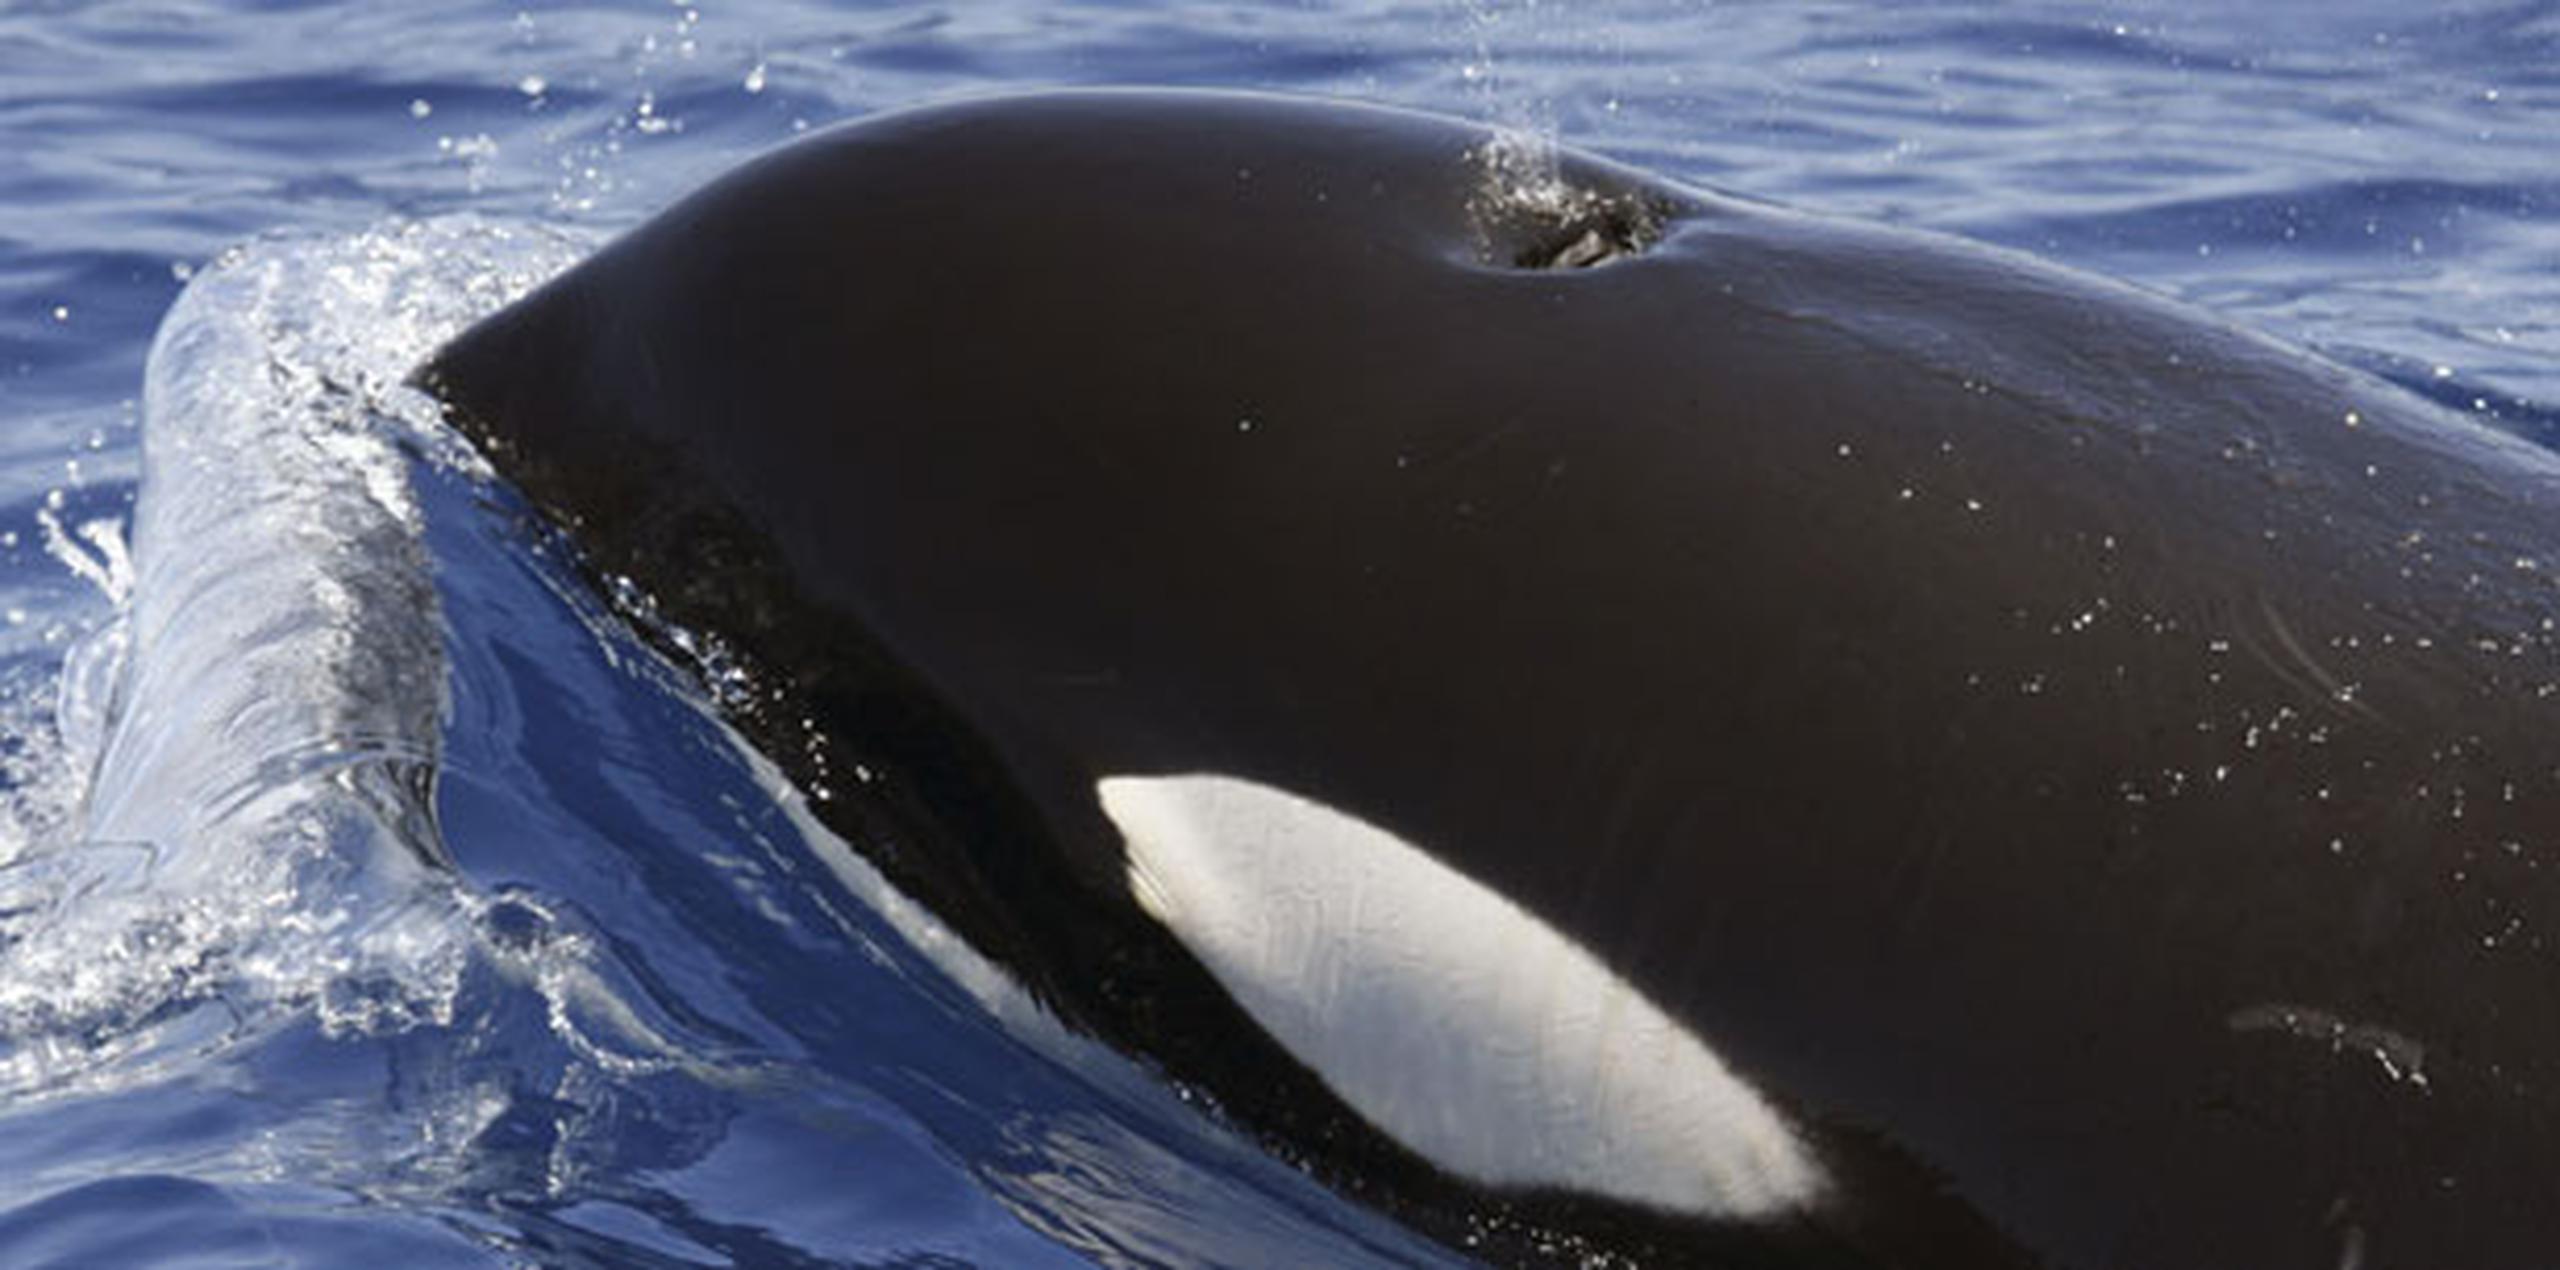 Las dos ballenas forman parte de un grupo de 75 que viven en aguas del Pacífico en el noroeste de Estados Unidos.  (Archivo)